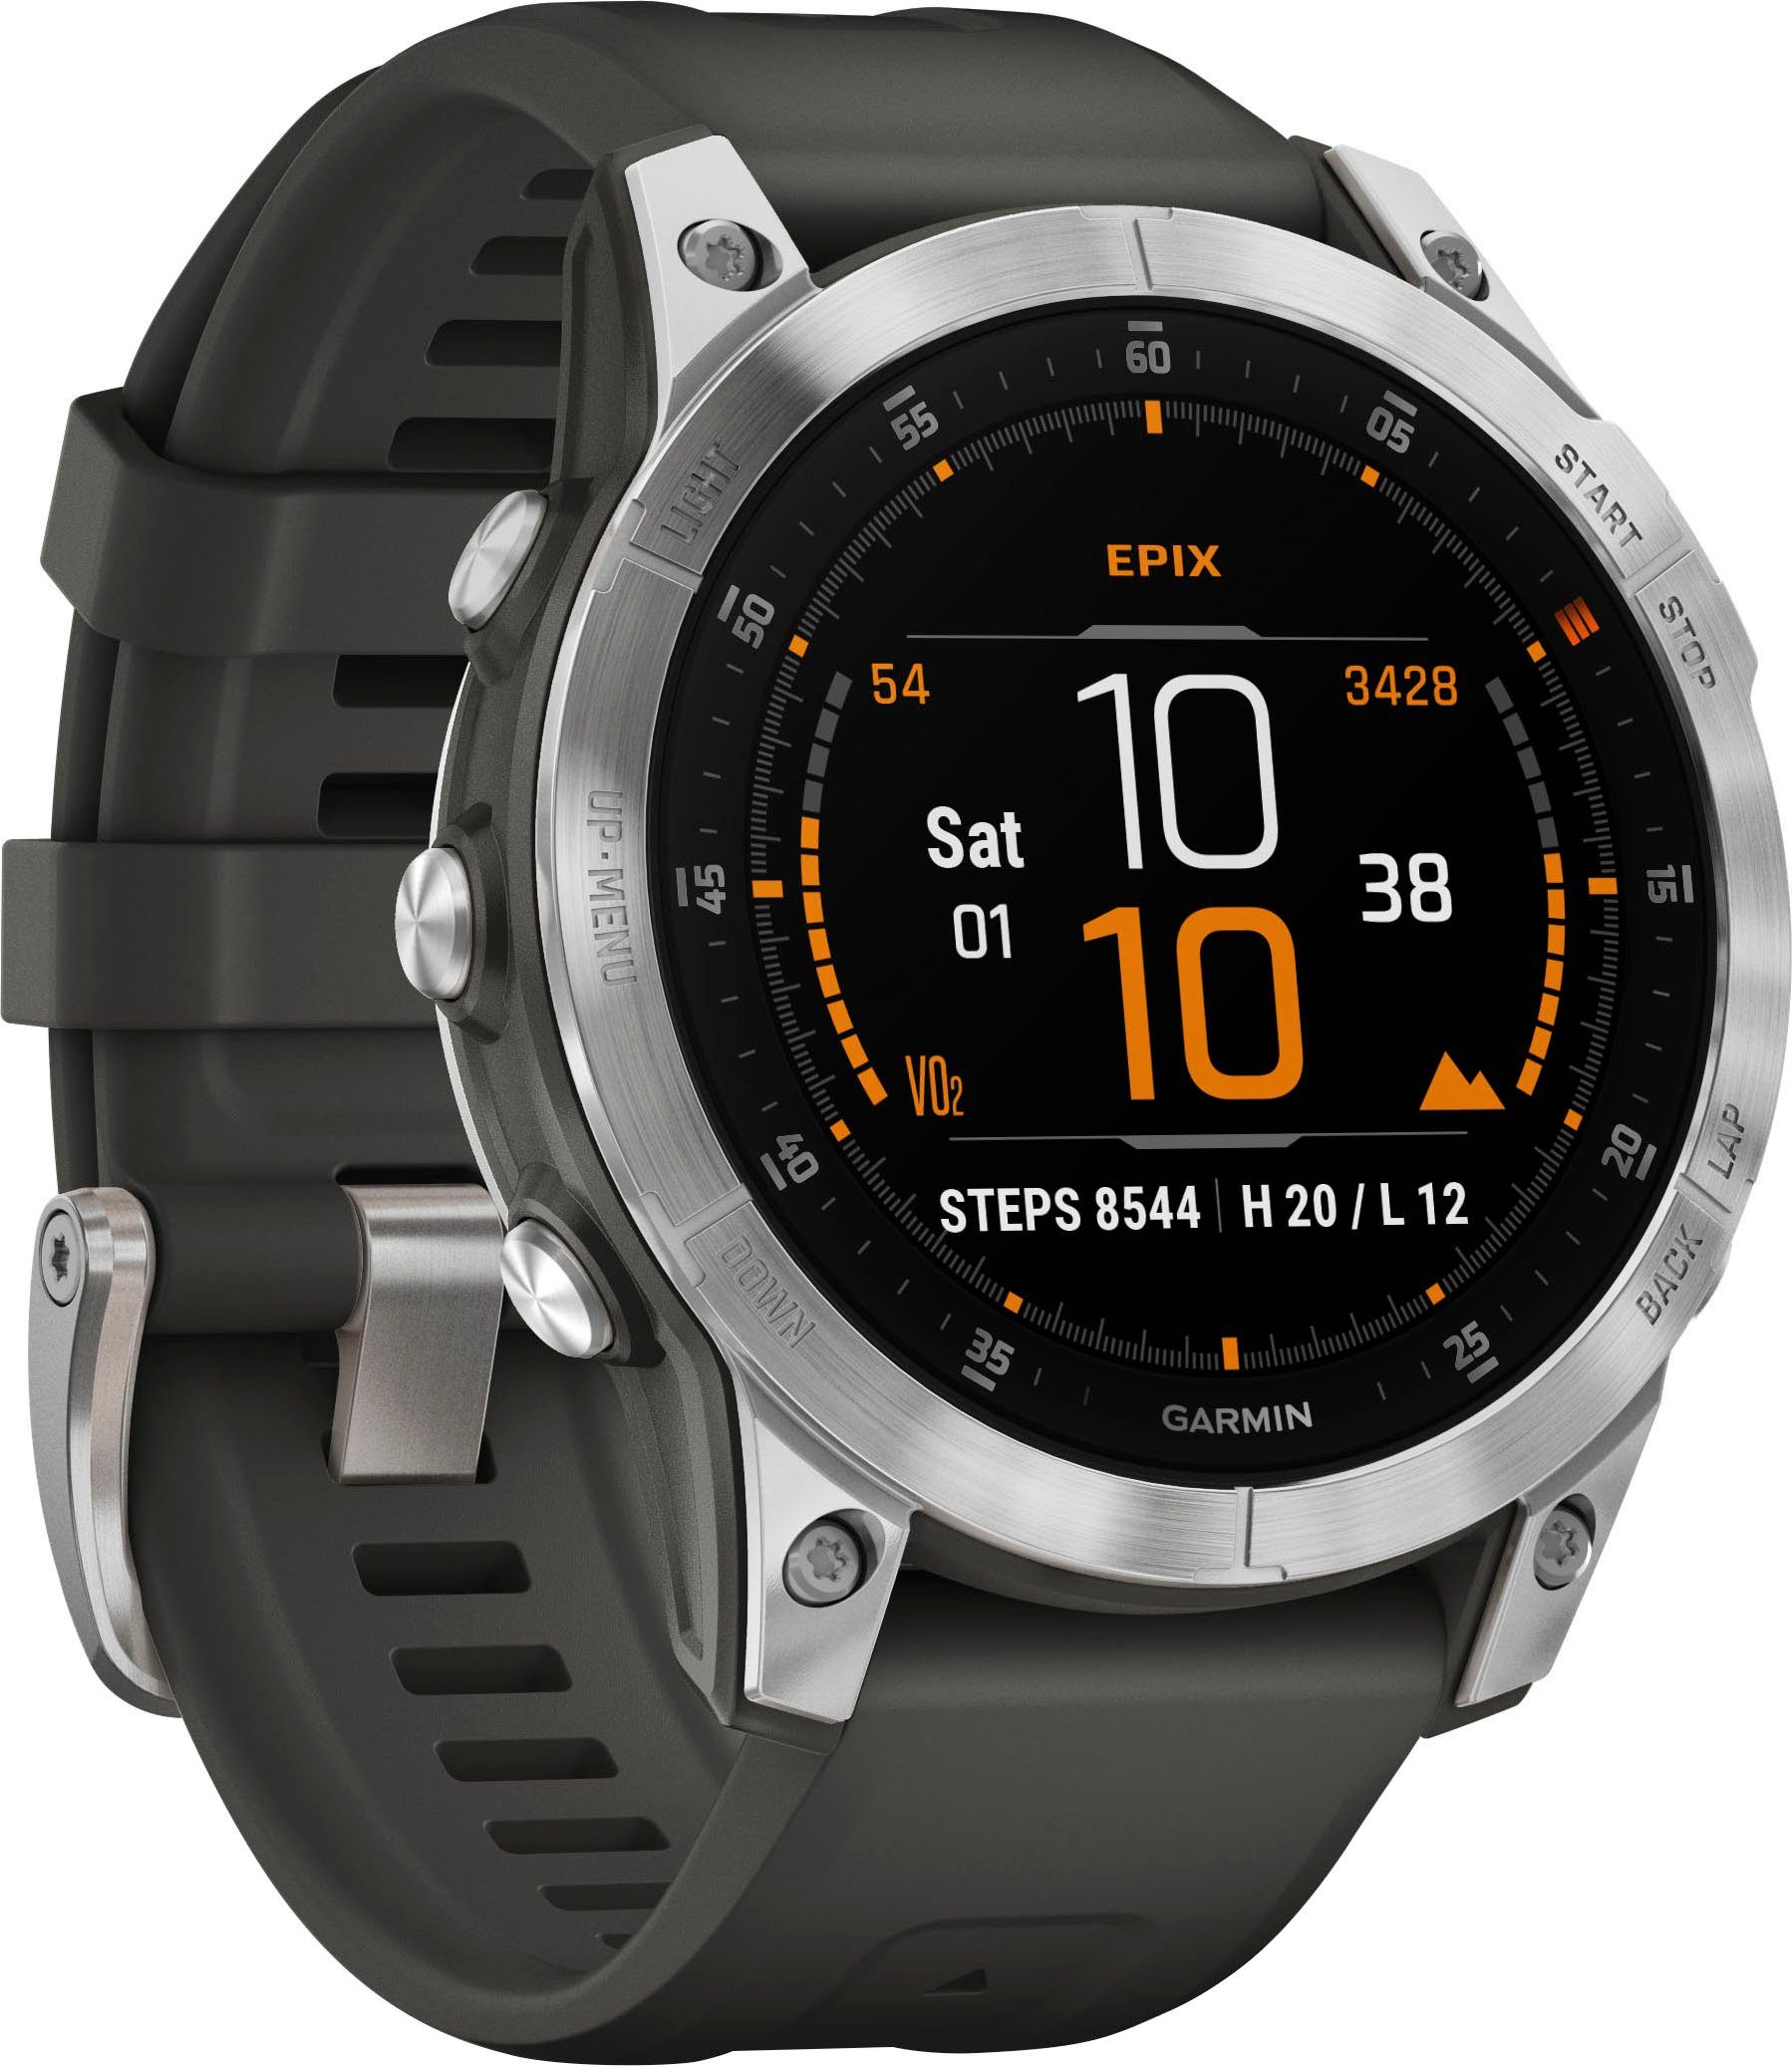 Garmin EPIX 2 Gen Smartwatch (3,3 cm/1,3 Zoll, Garmin), Vorinstallierten  Golf- und Skikarten